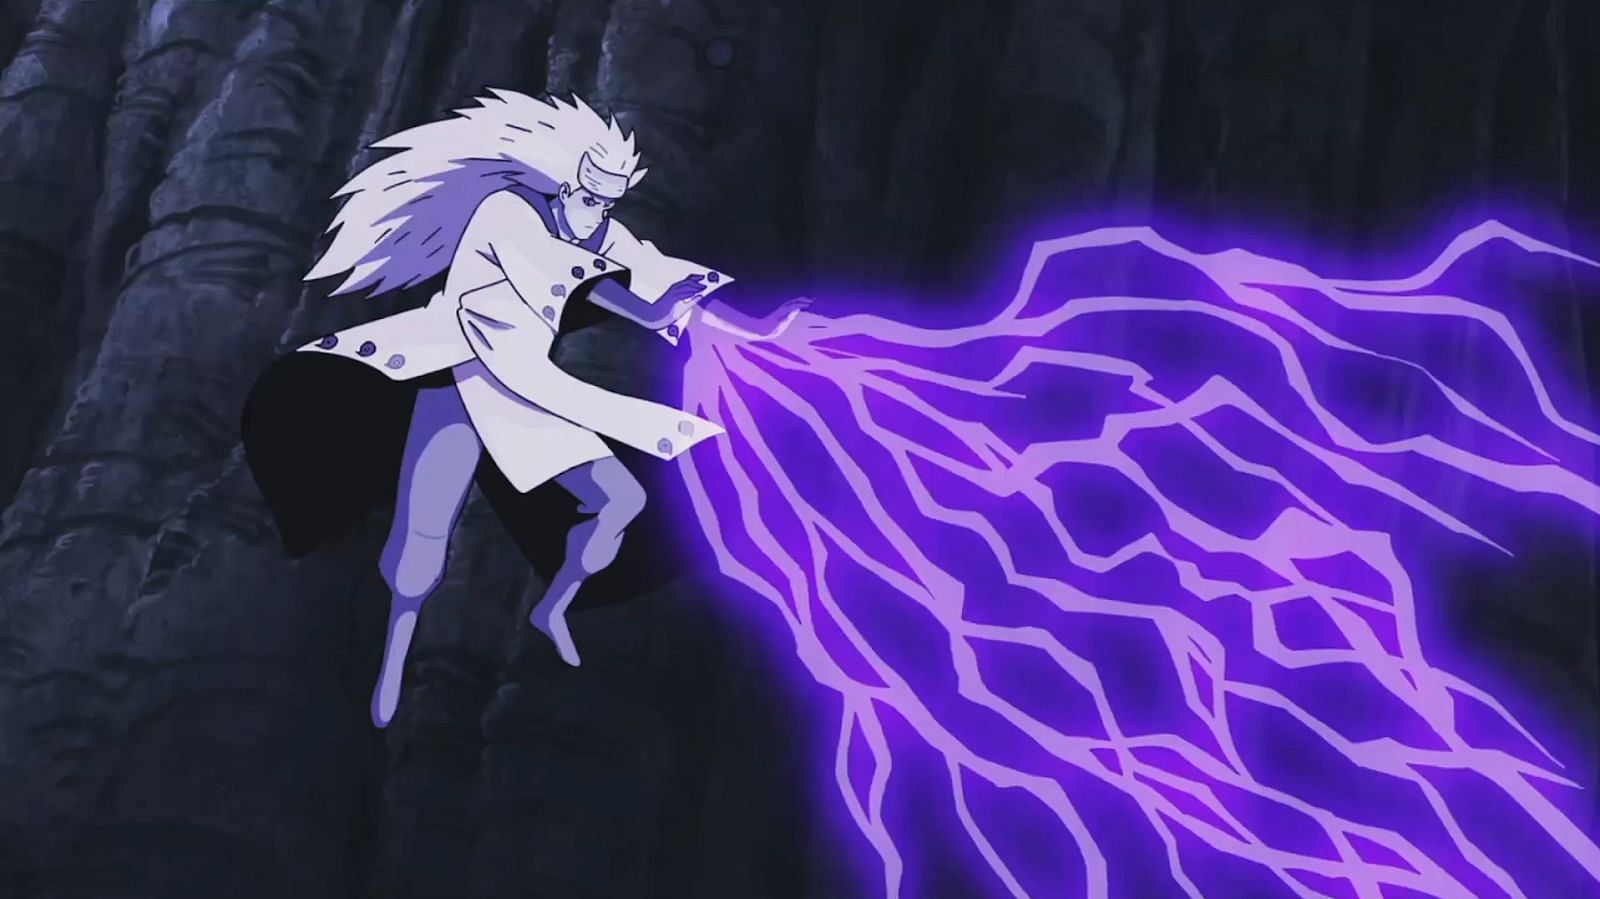 Hashirama Senju vs Madara Uchiha (OVA), Wiki Naruto